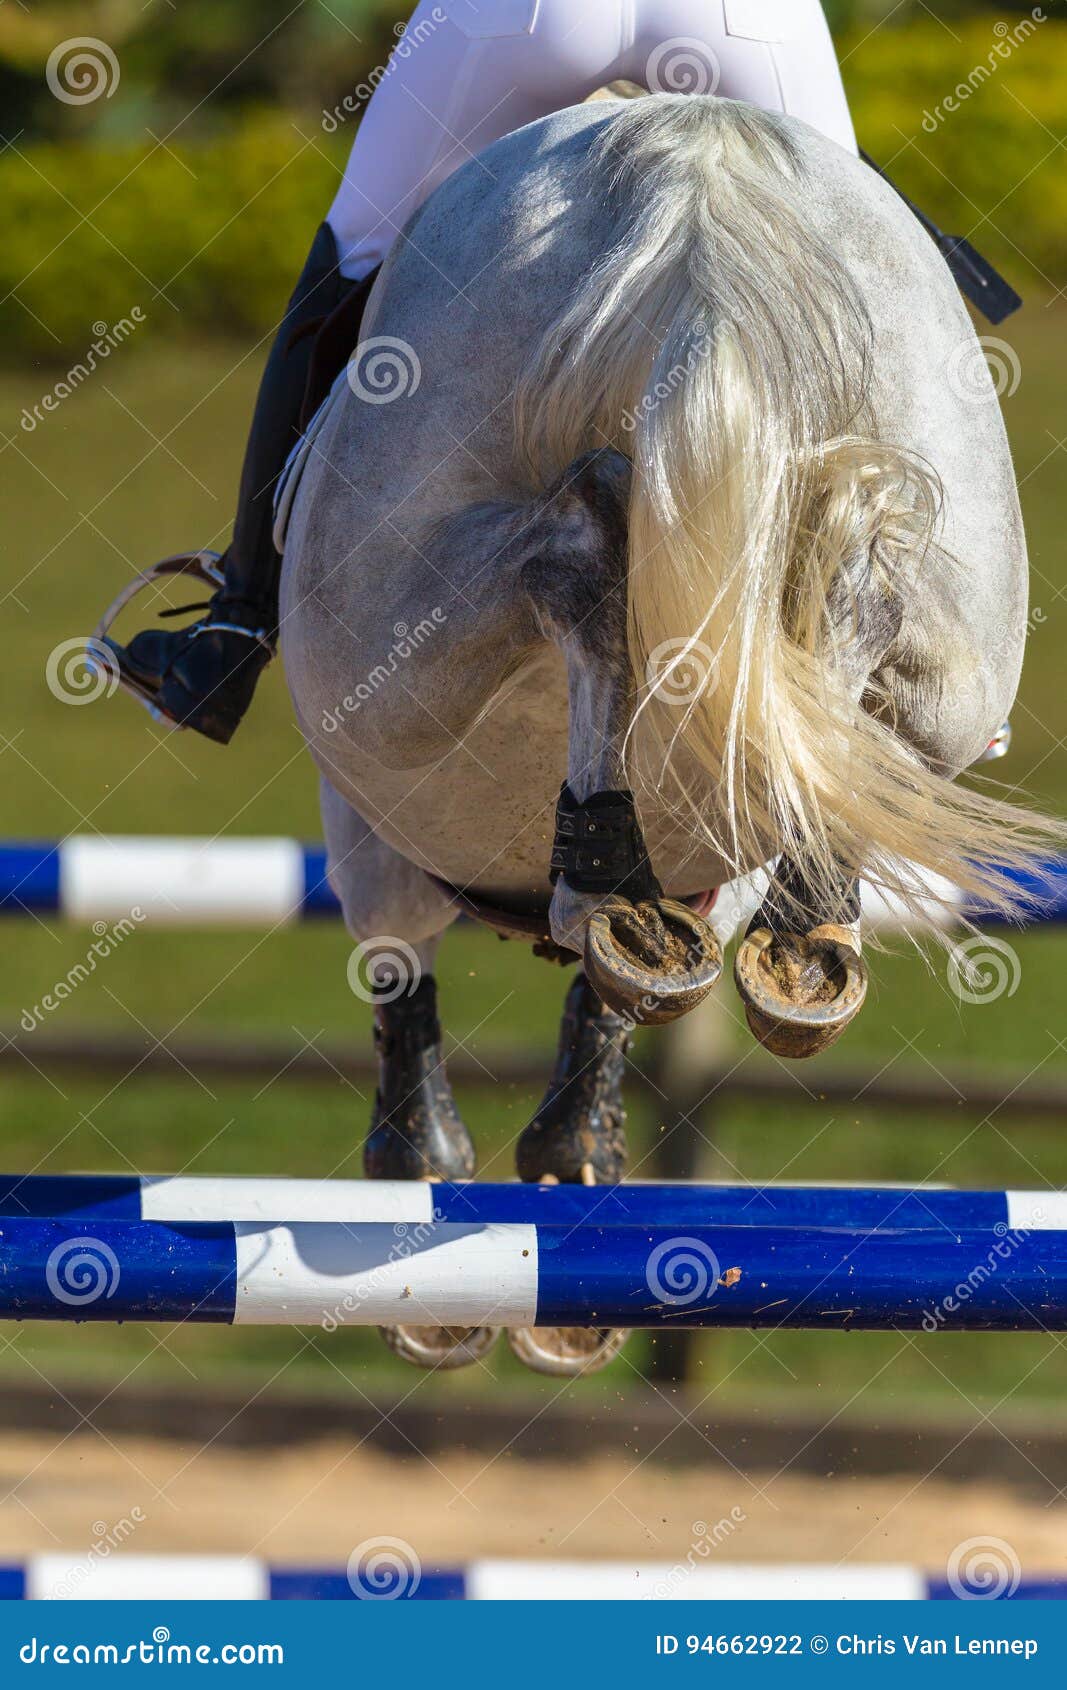 rider horse jumping closeup rear hoofs